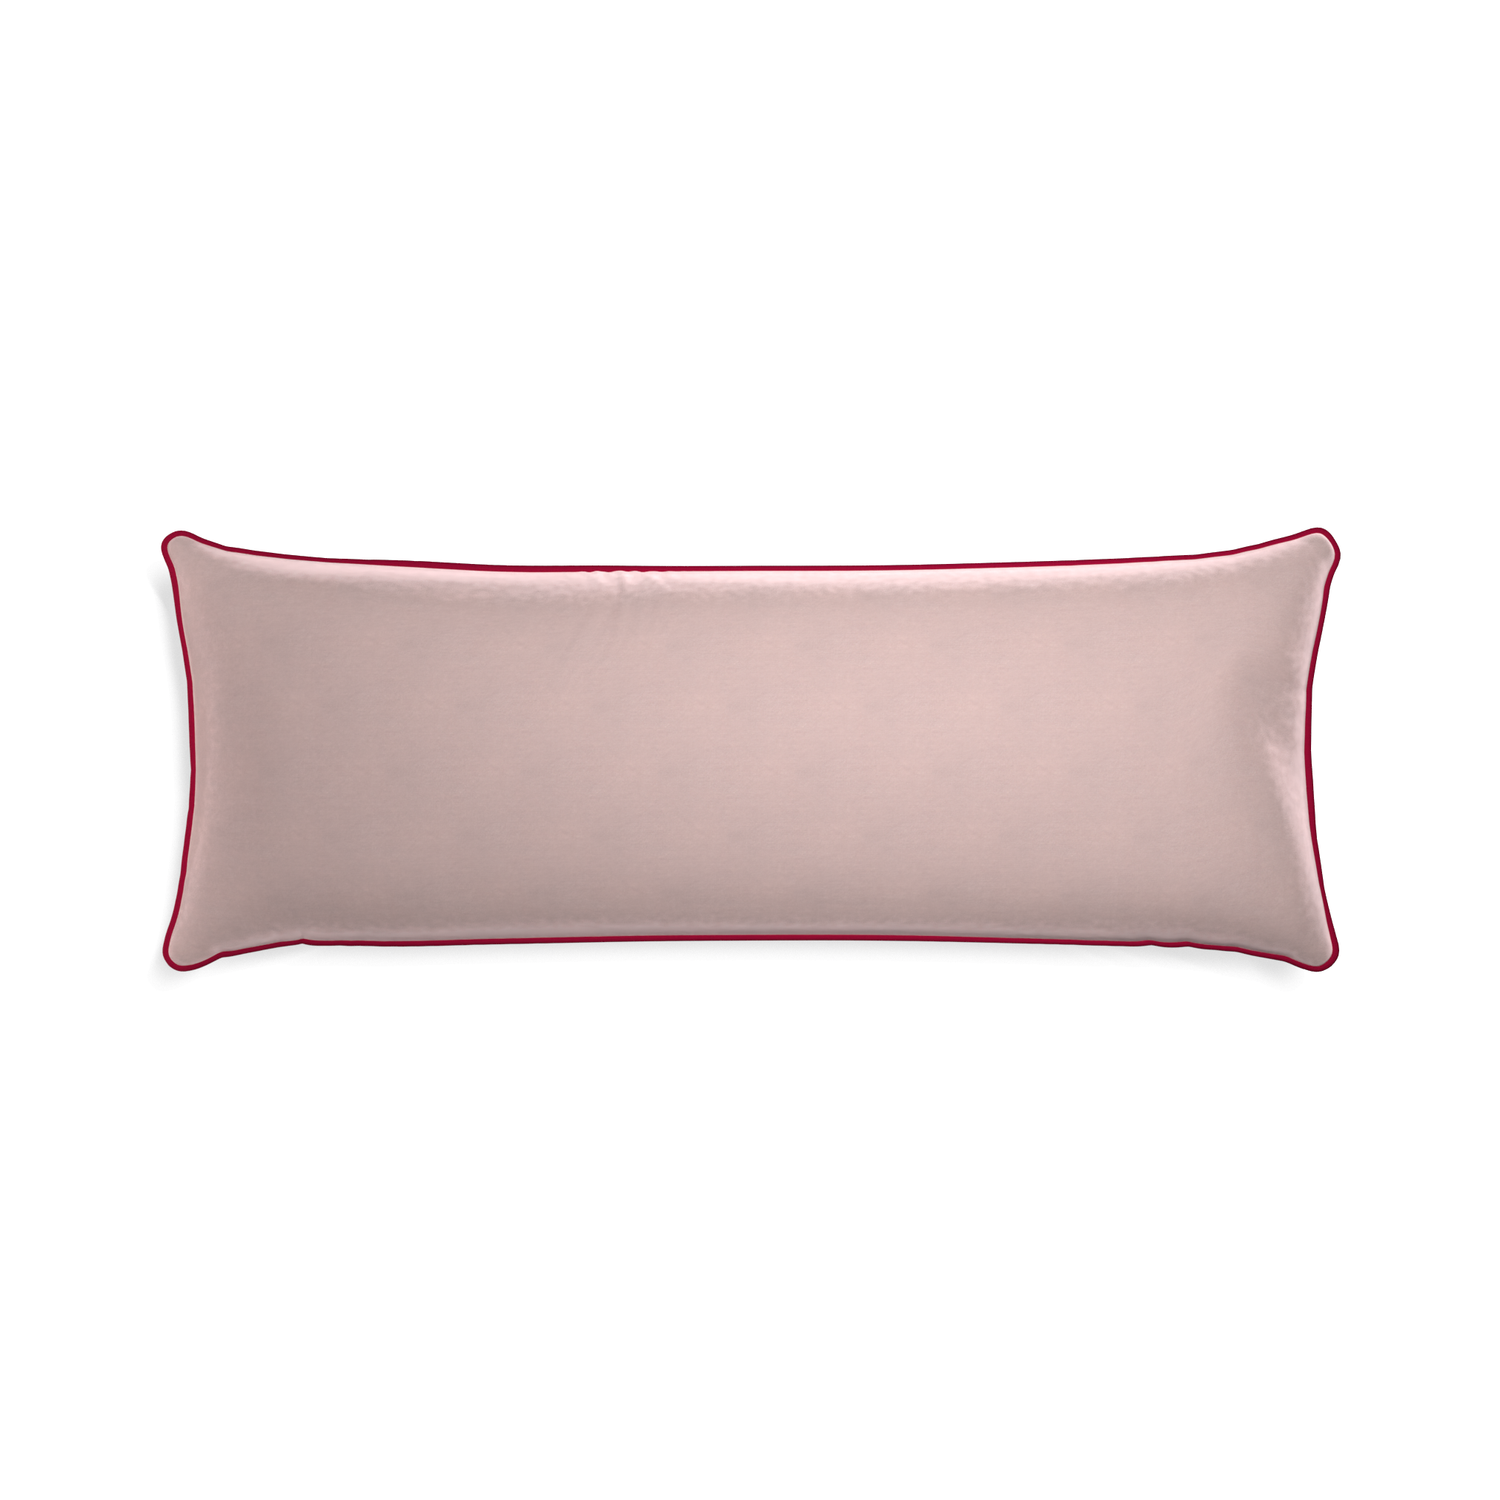 rectangle light pink velvet pillow dark red piping